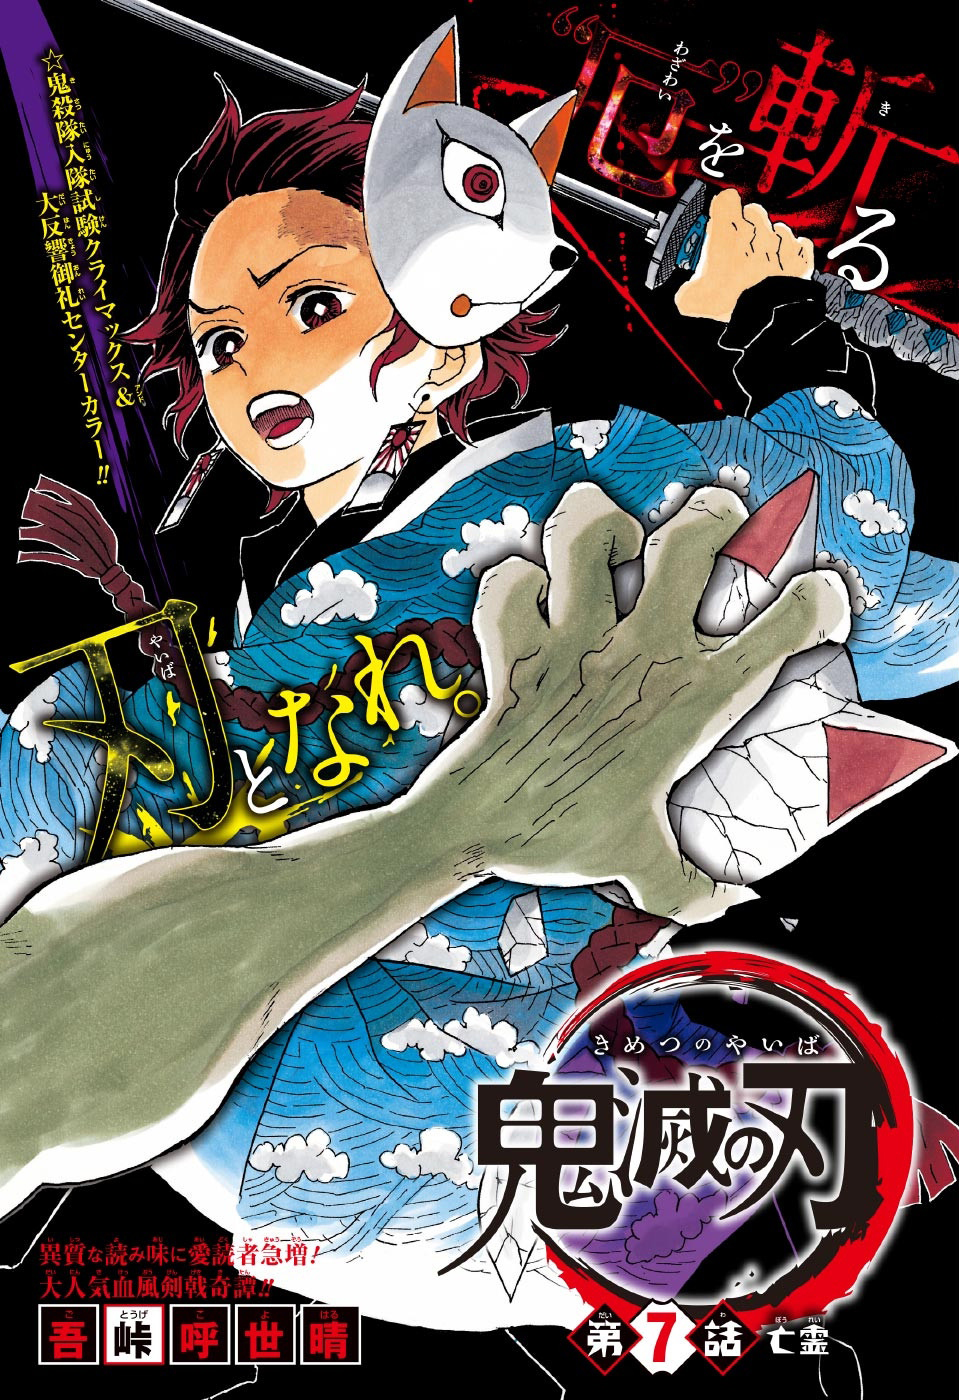 Blu-ray & DVD: Mugen Train Arc - Volume 2, Kimetsu no Yaiba Wiki